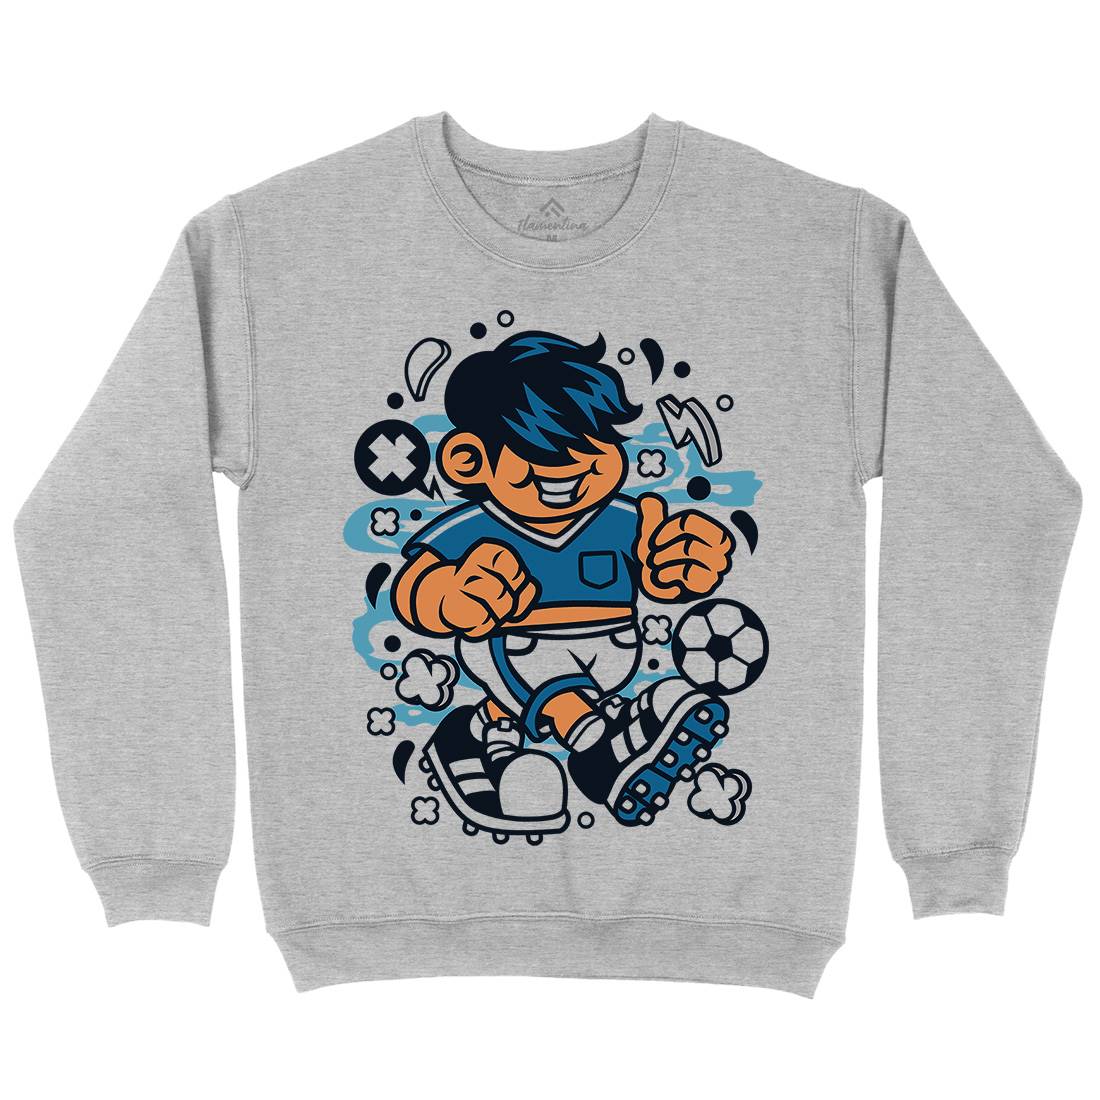 Soccer Kid Kids Crew Neck Sweatshirt Sport C250